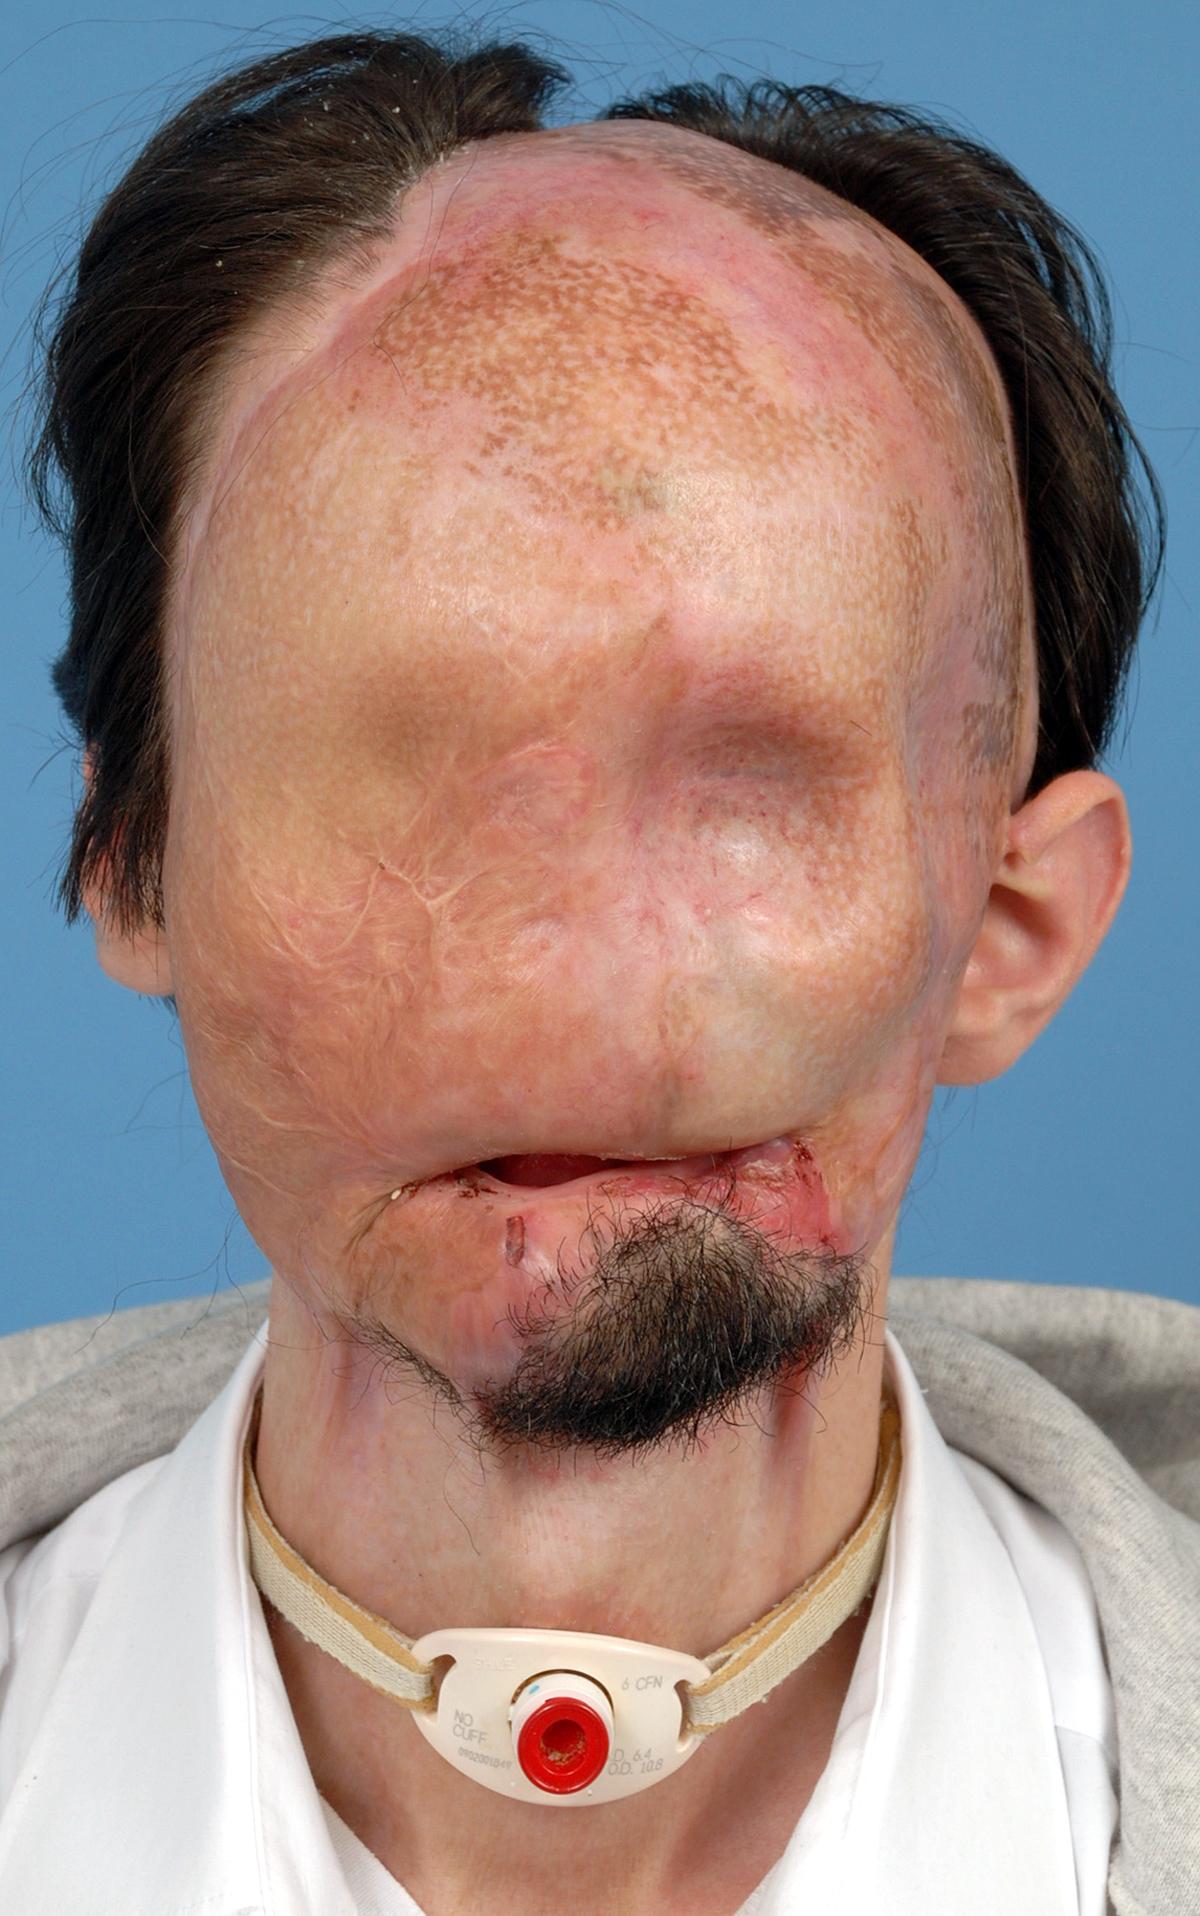 Så här såg Dallas ut före operationen. Olyckan har bränt bort hela ansiktet.